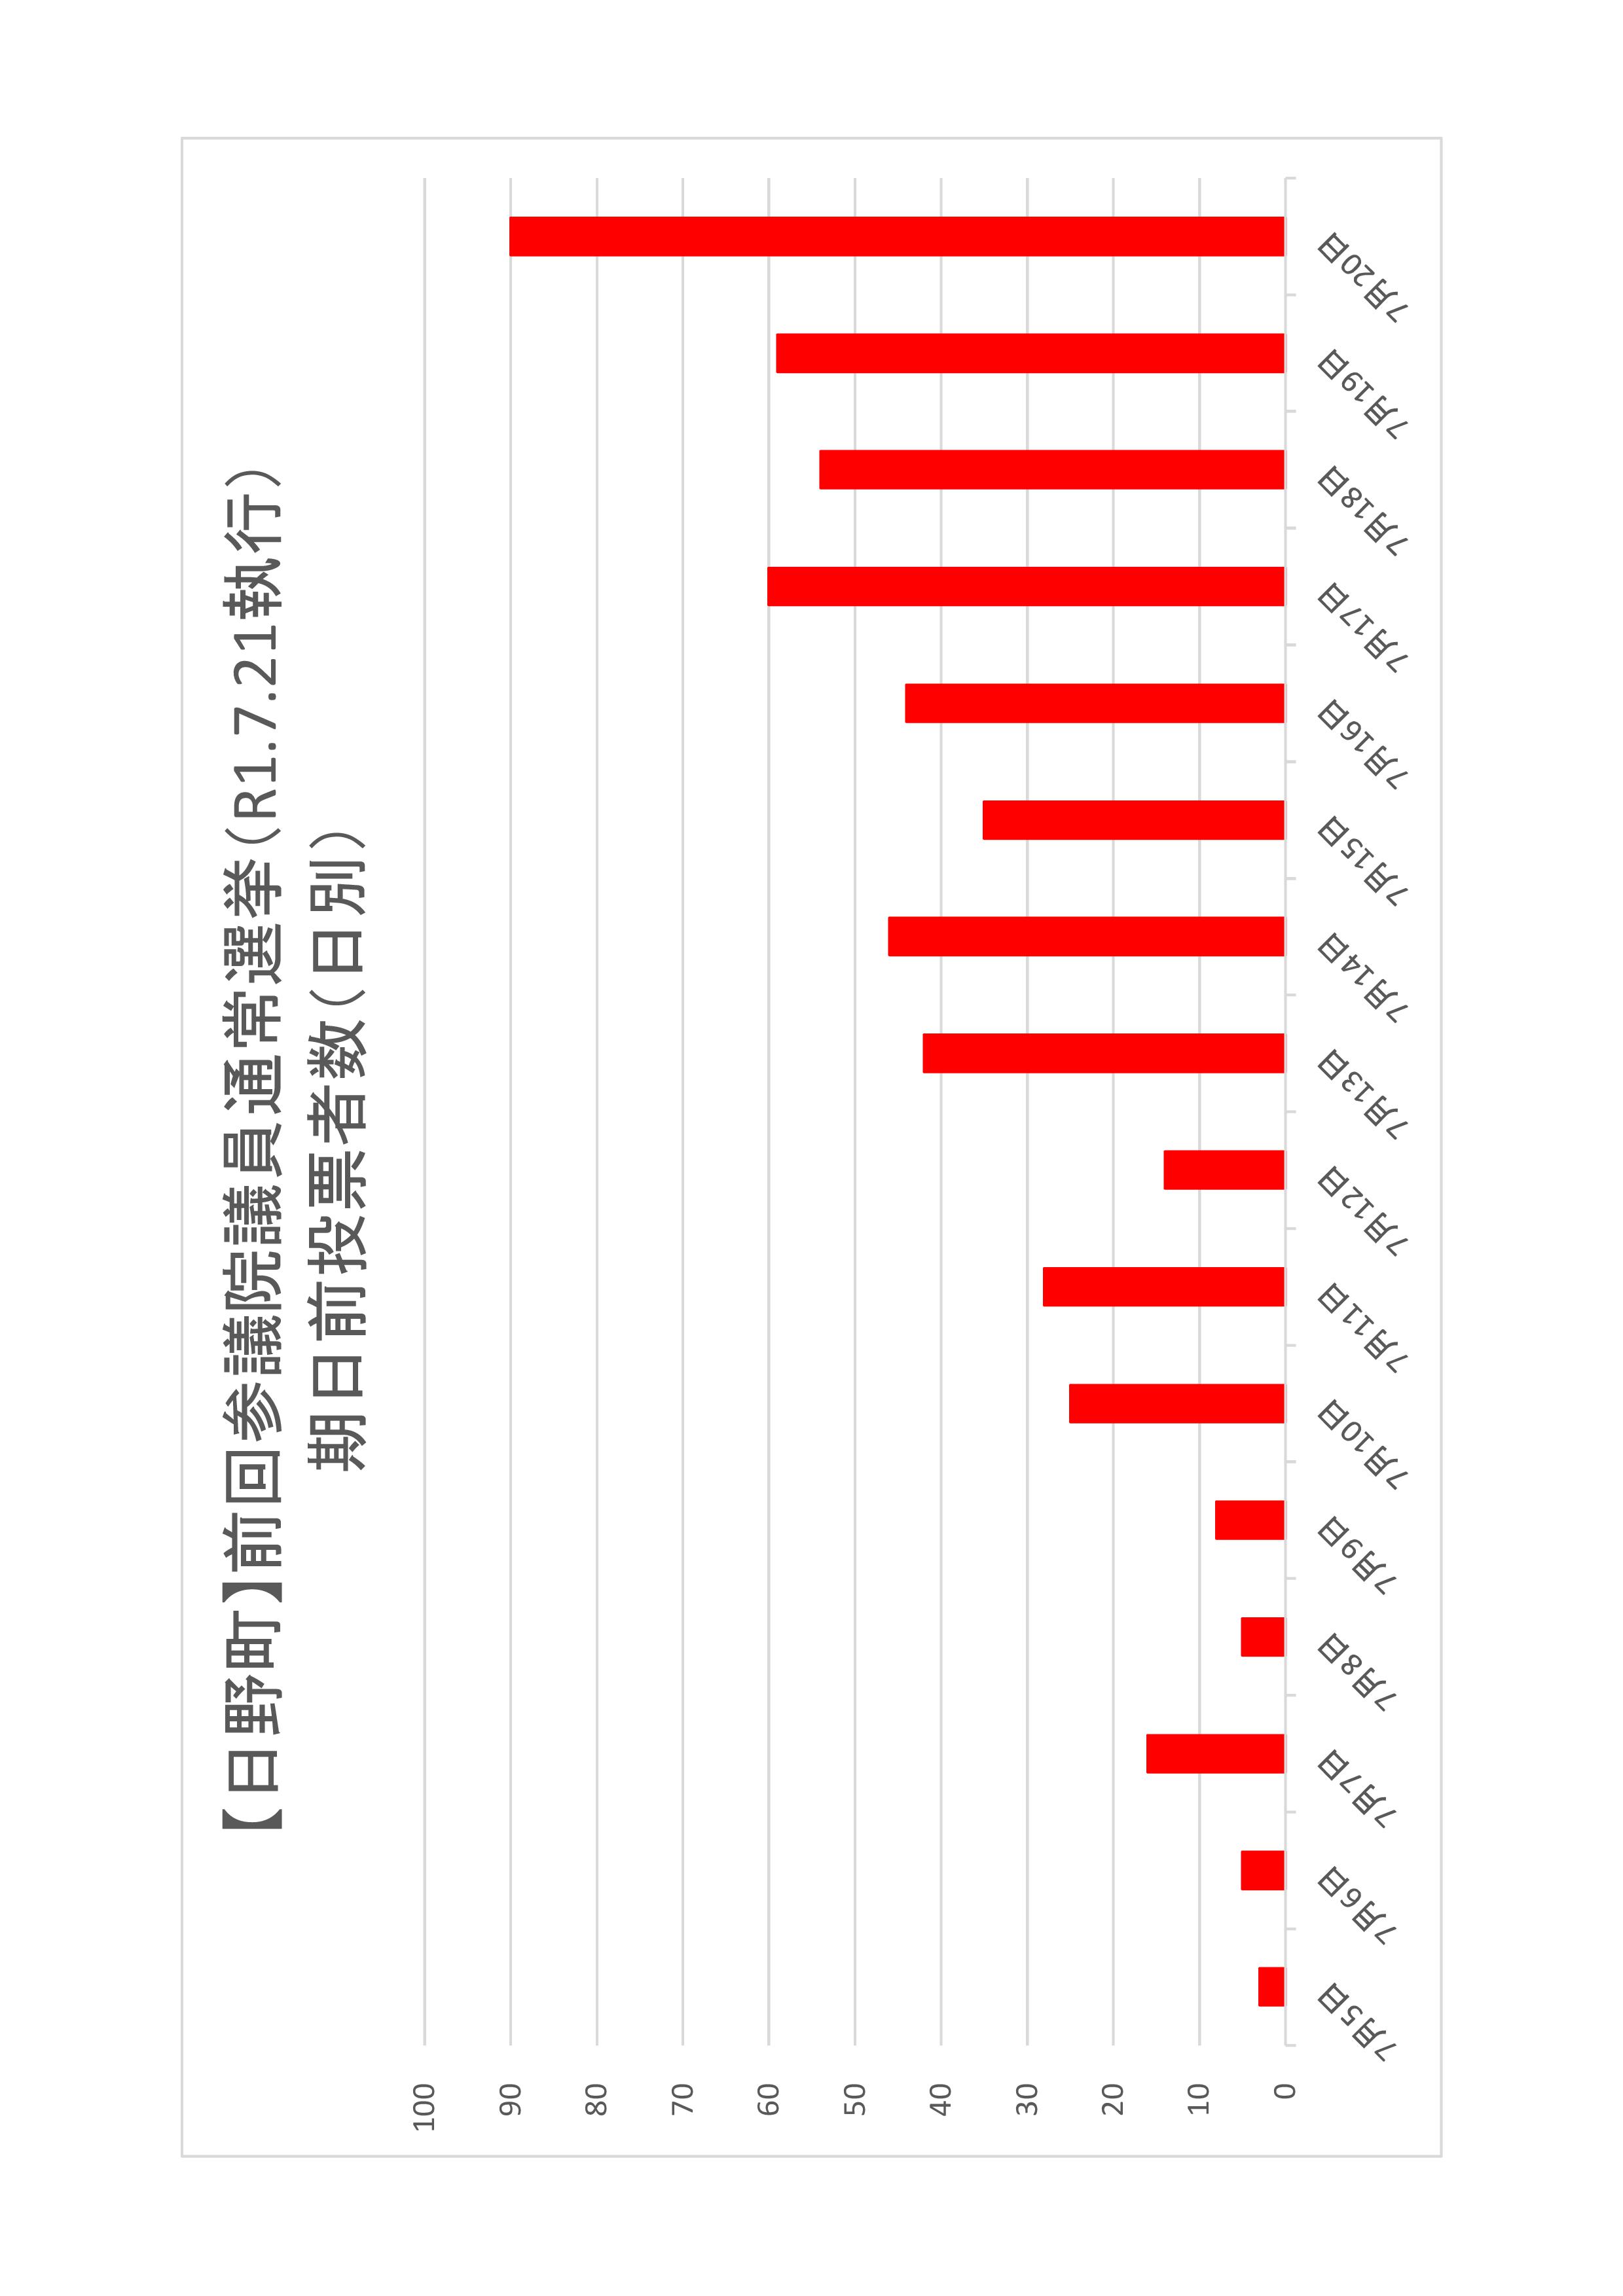 日野町の日別期日前投票者数のグラフ